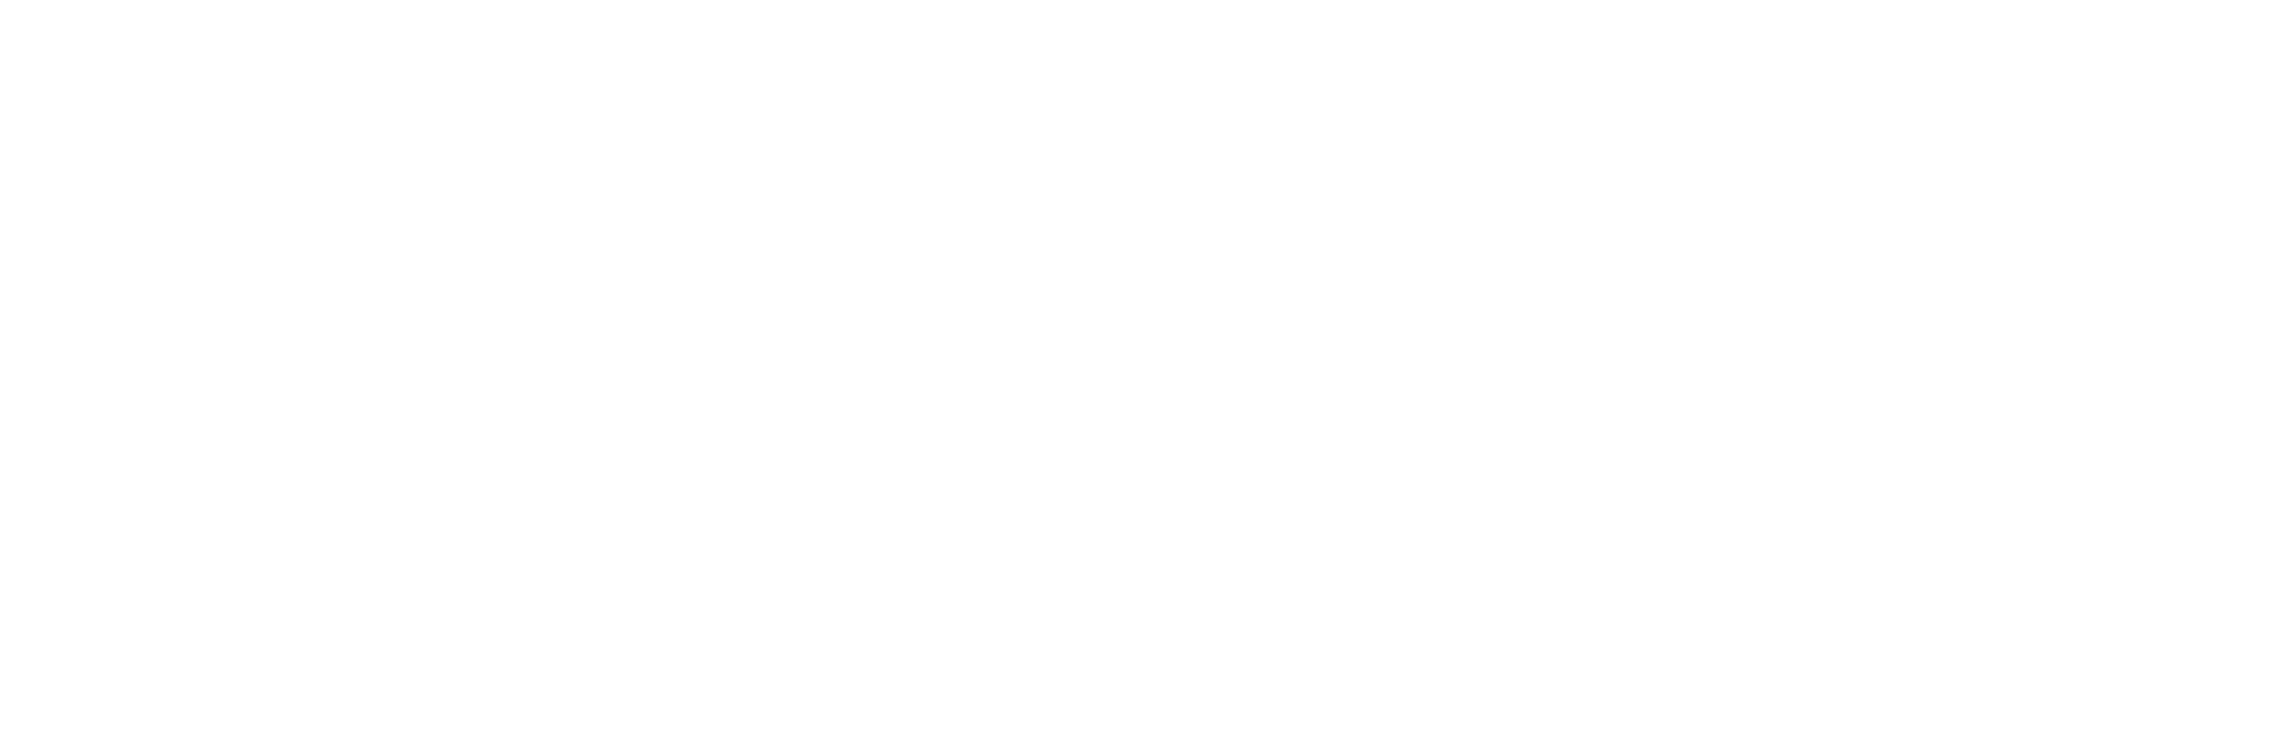 Craig Proctor Superconference Online